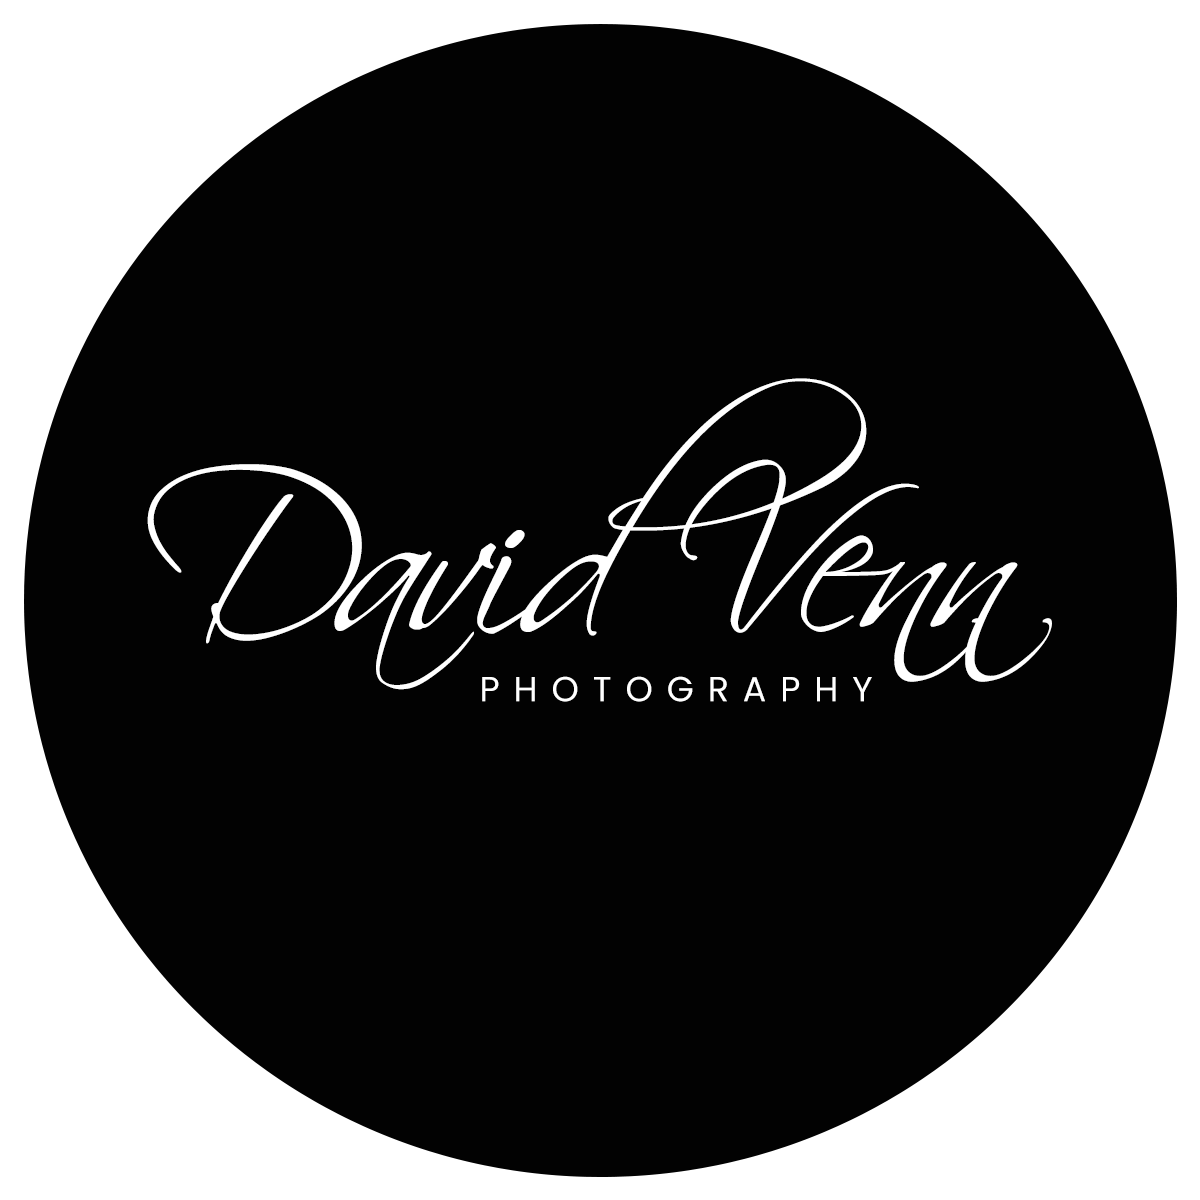 David121venn logo